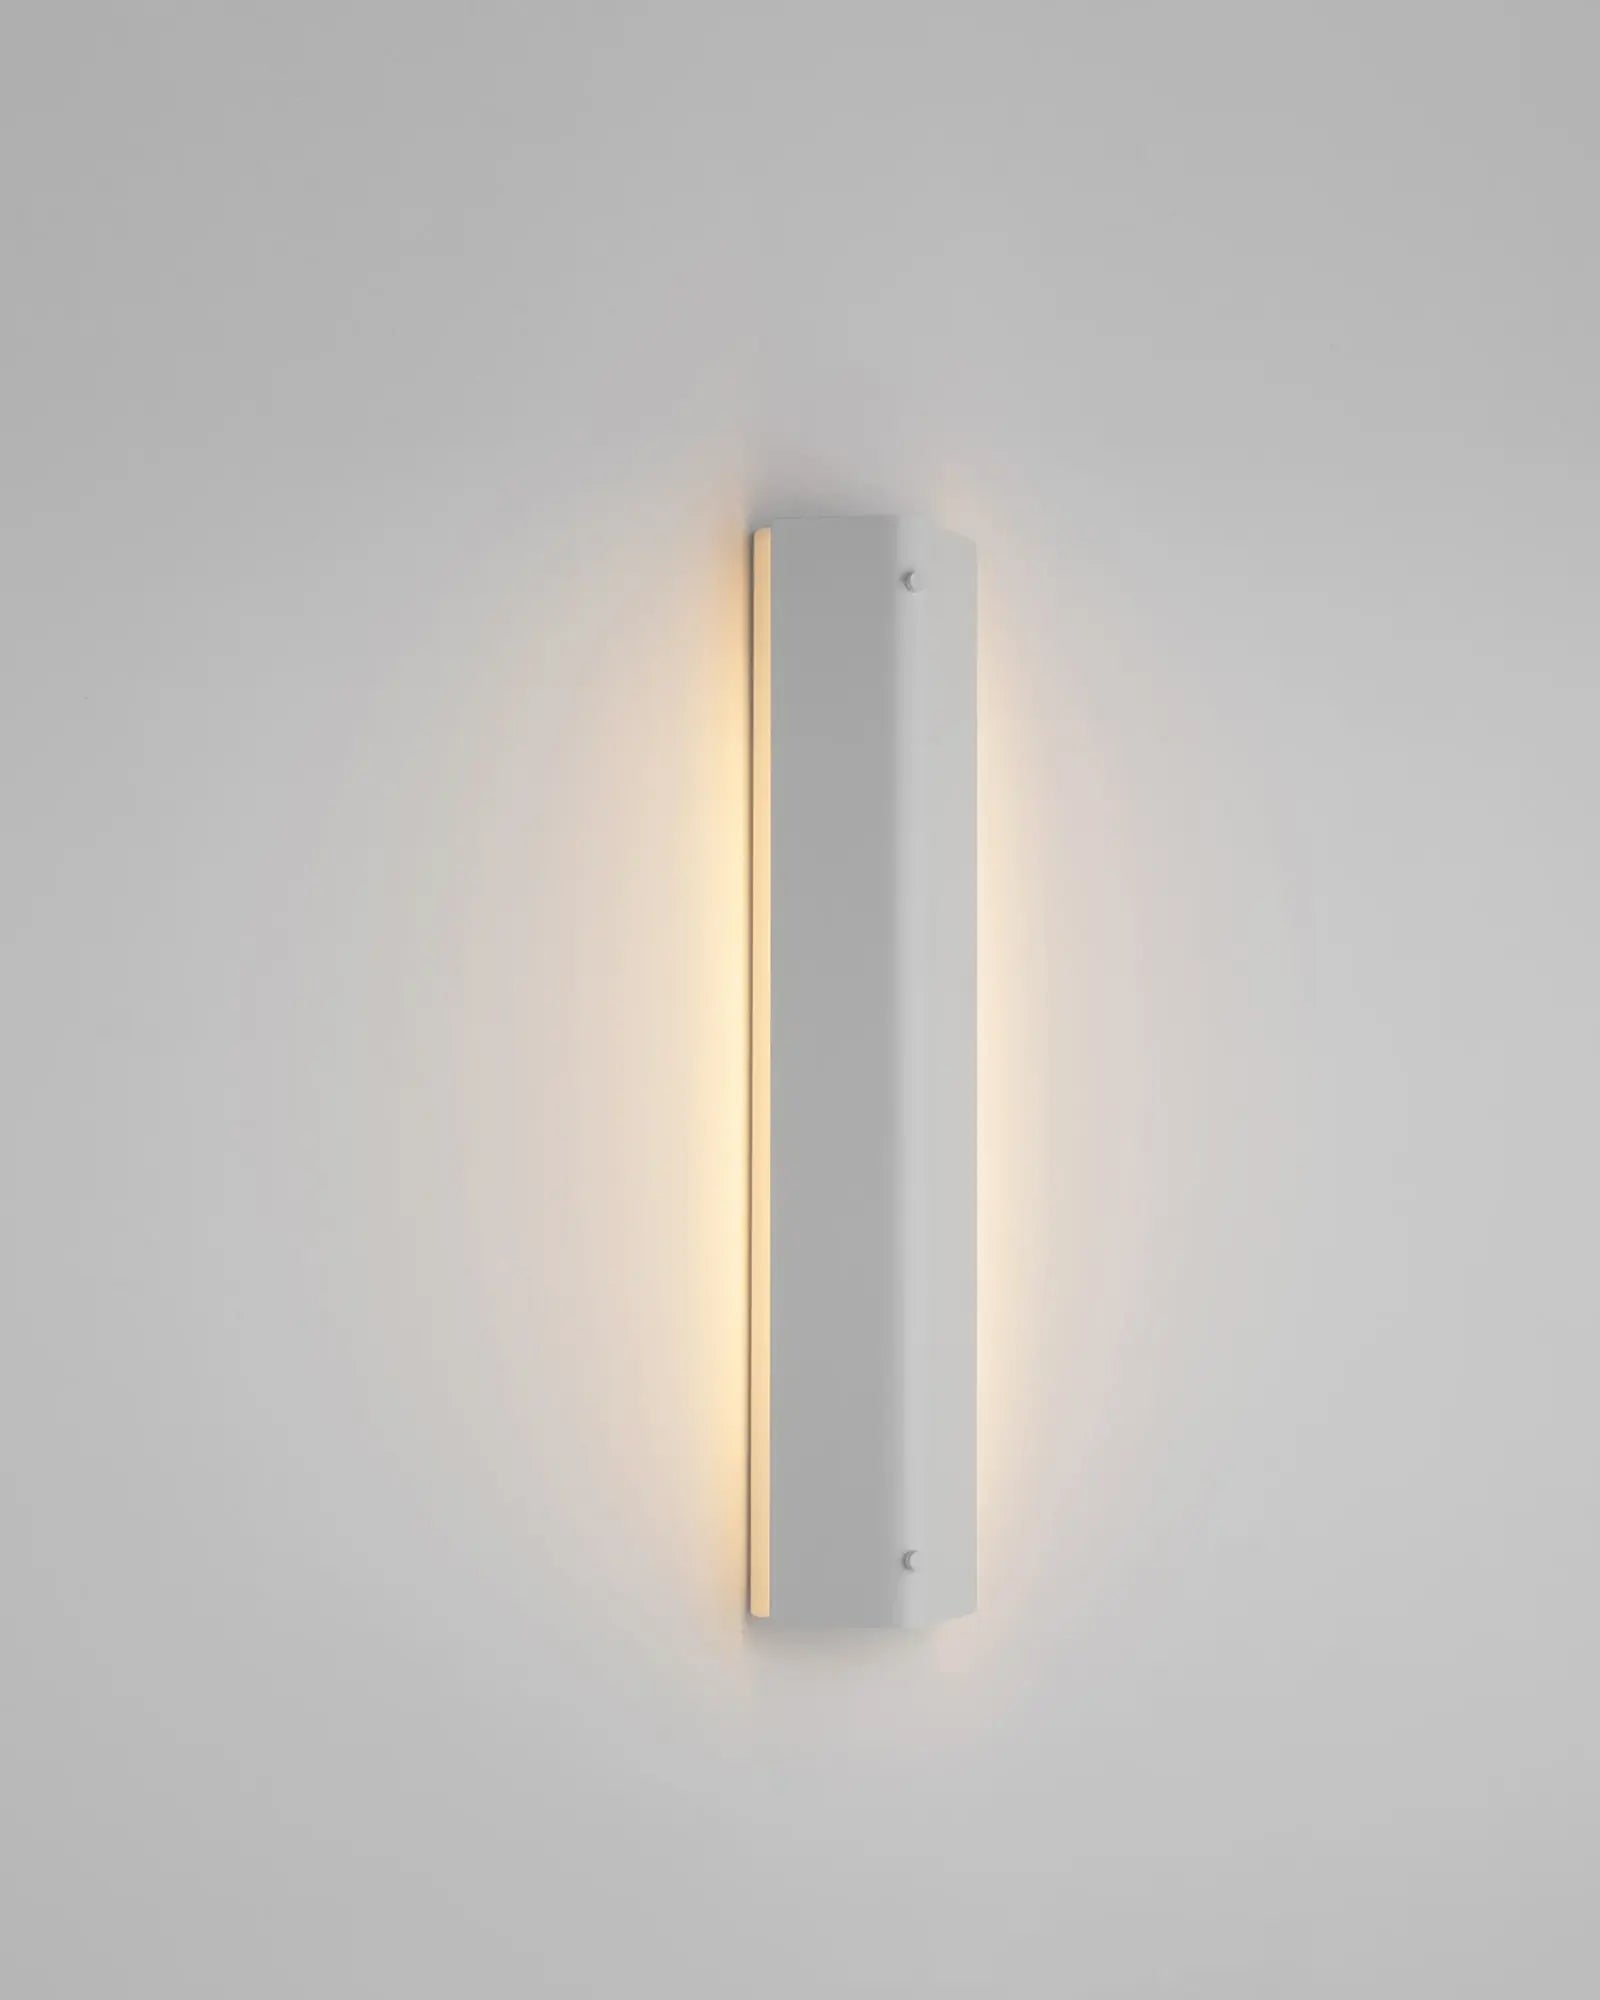 Gada Wall Light by Estiluz Lighting